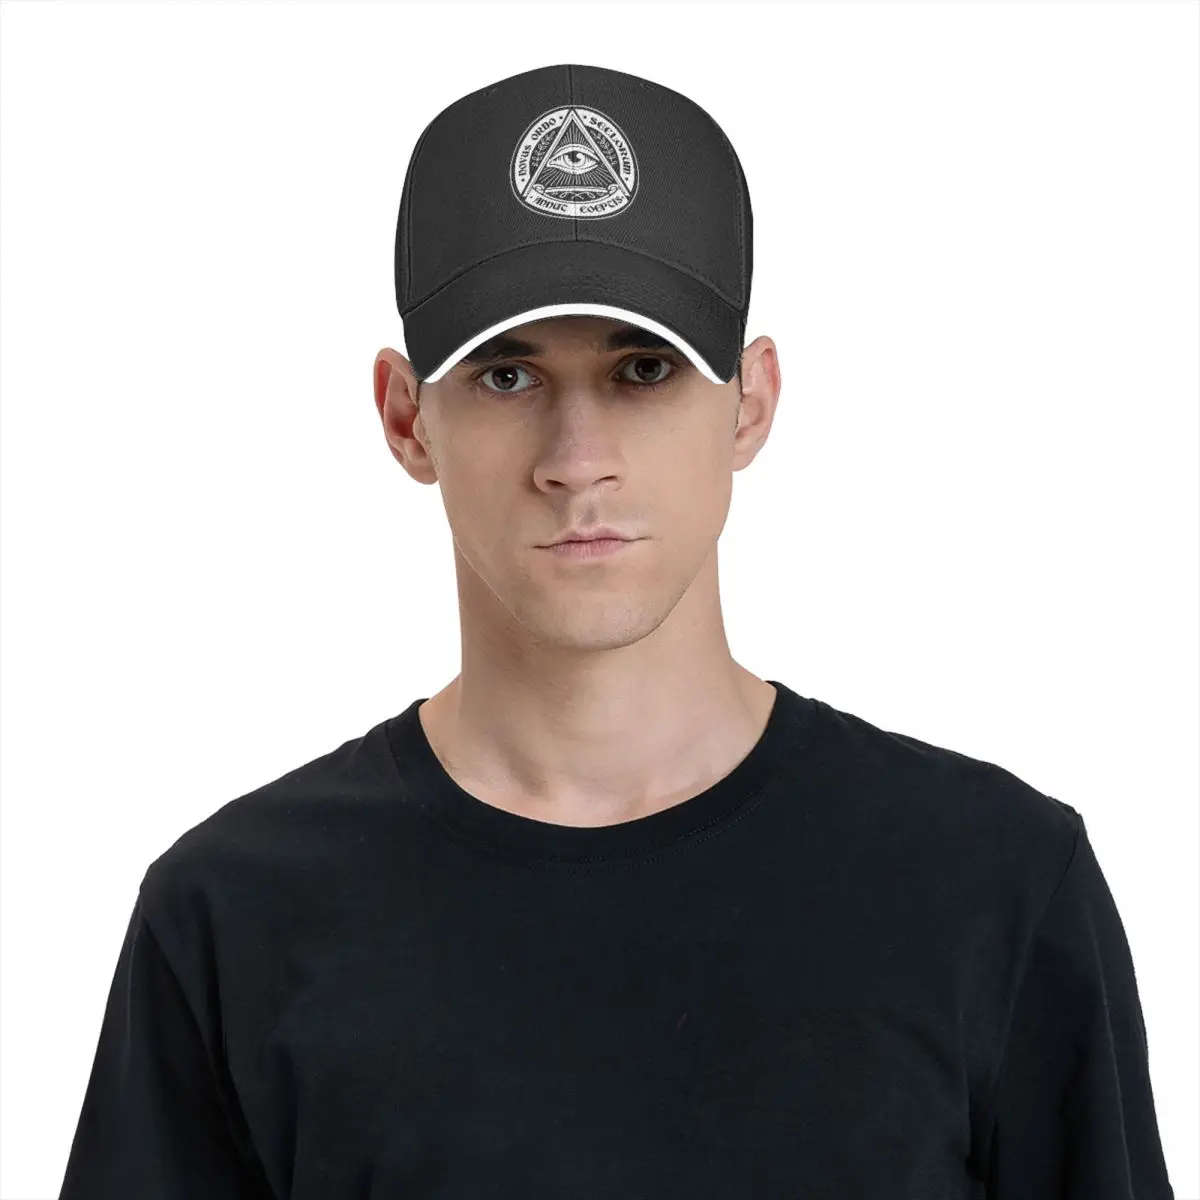 63251vdgxdg Runy Custom Illuminati Adjustable Baseball Hat & Cap Black 